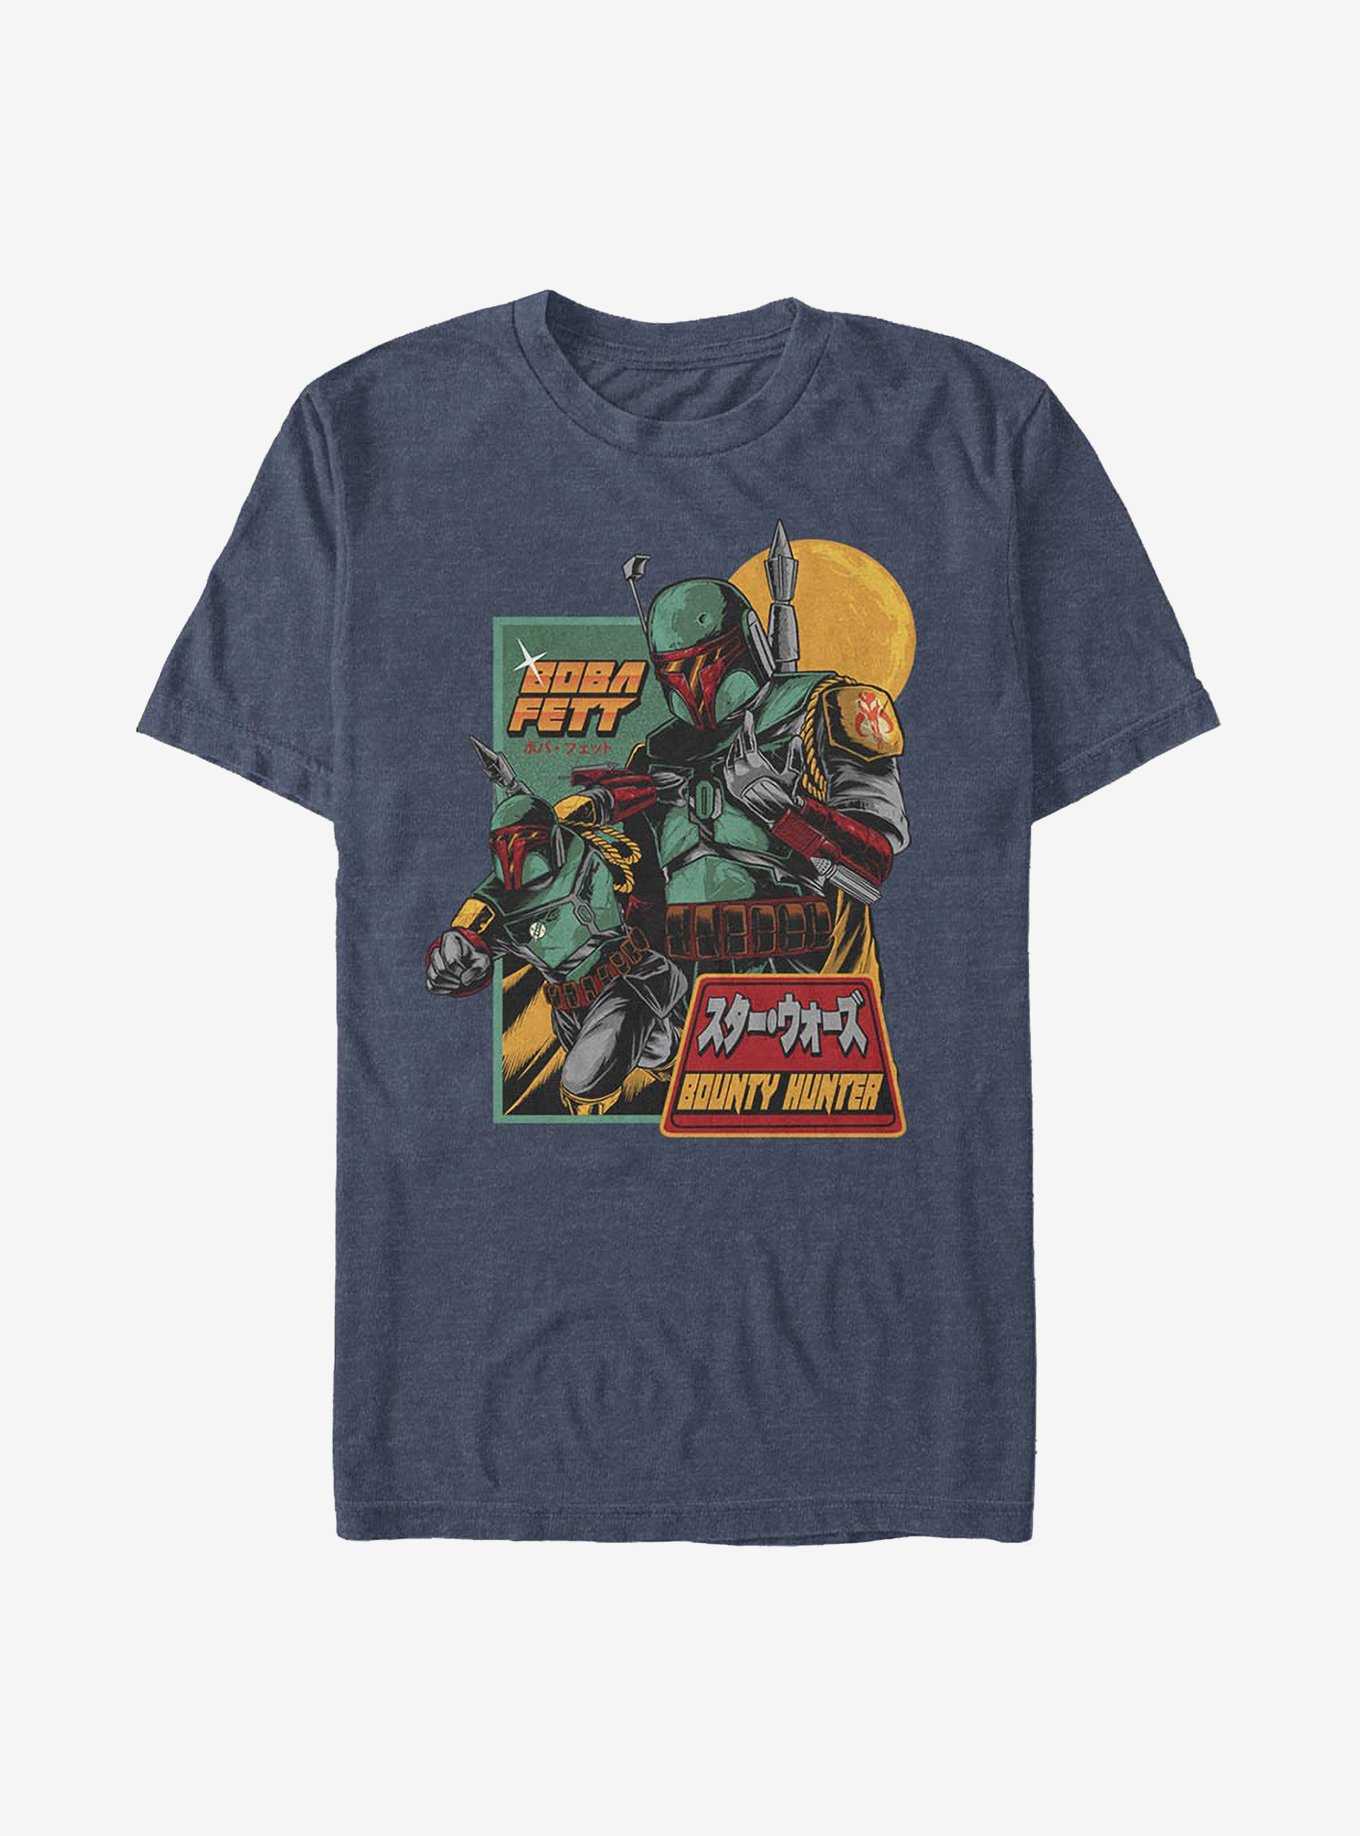 Star Wars Boba Fett Bounty Hunter T-Shirt, , hi-res